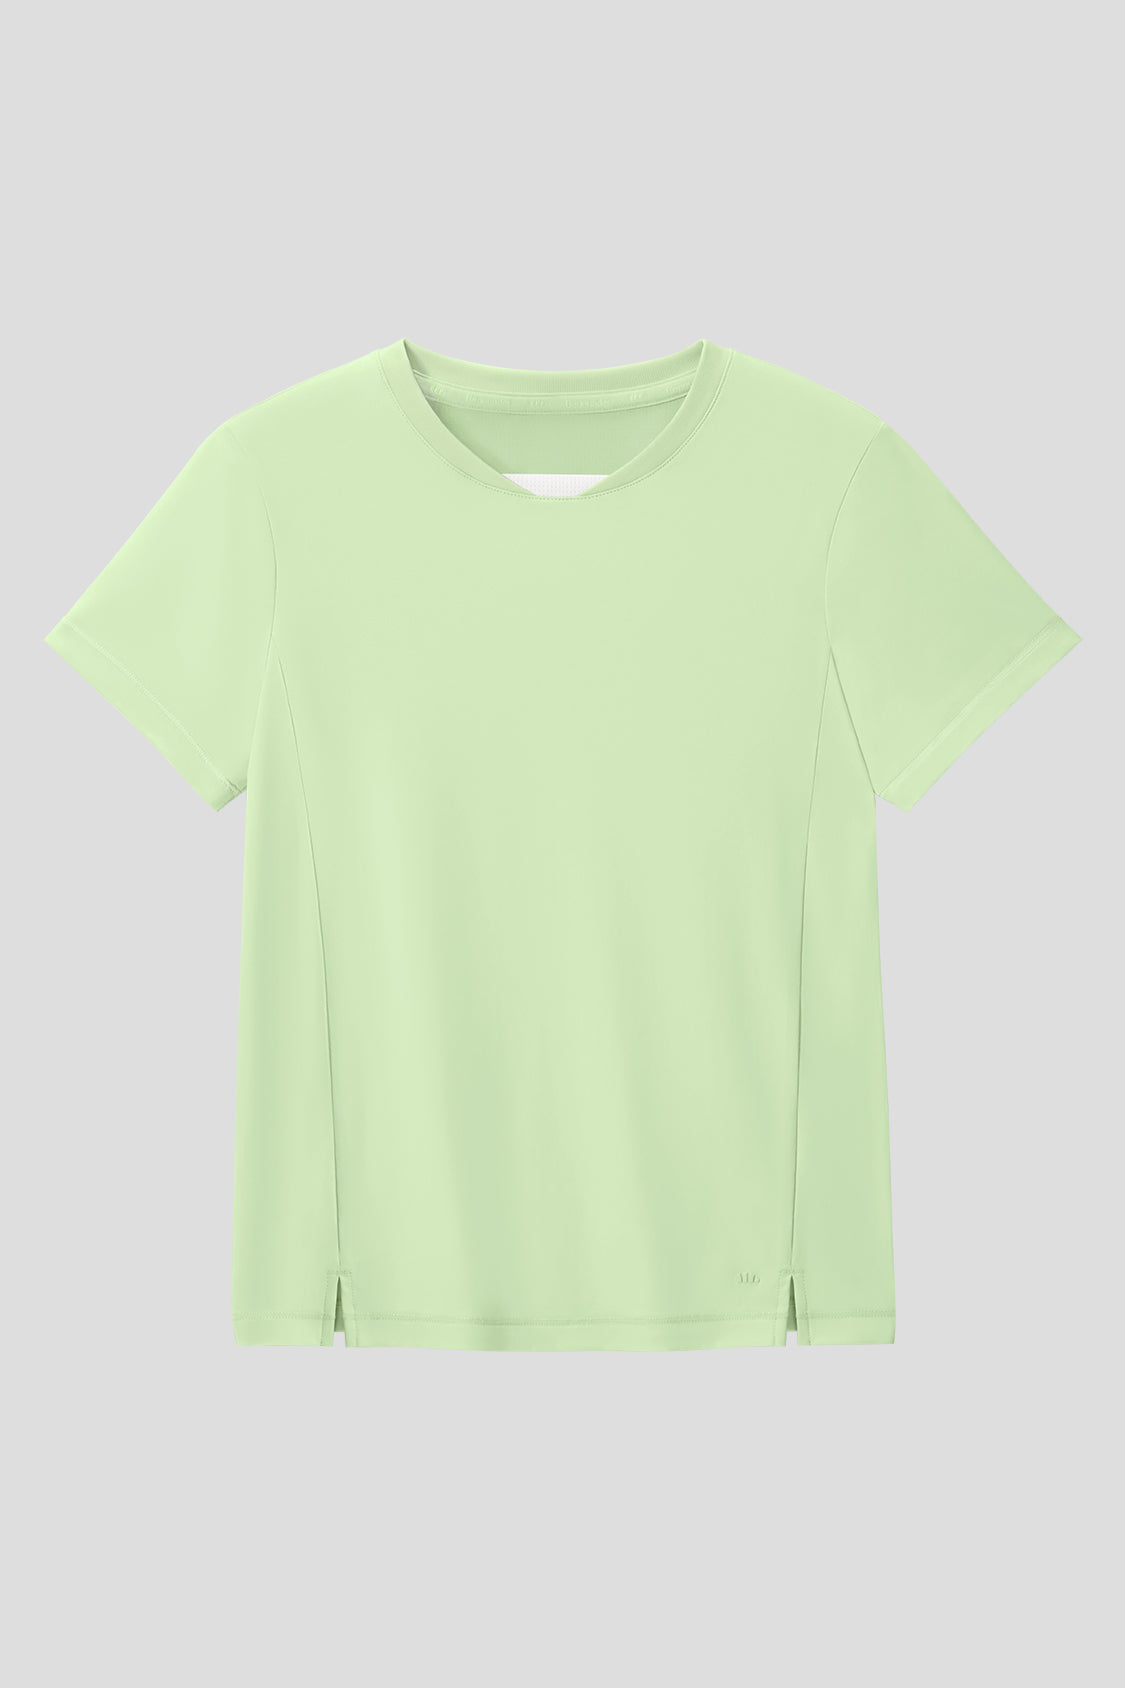 beneunder kids outdoor sun protection shirt upf50 #color_light grass green